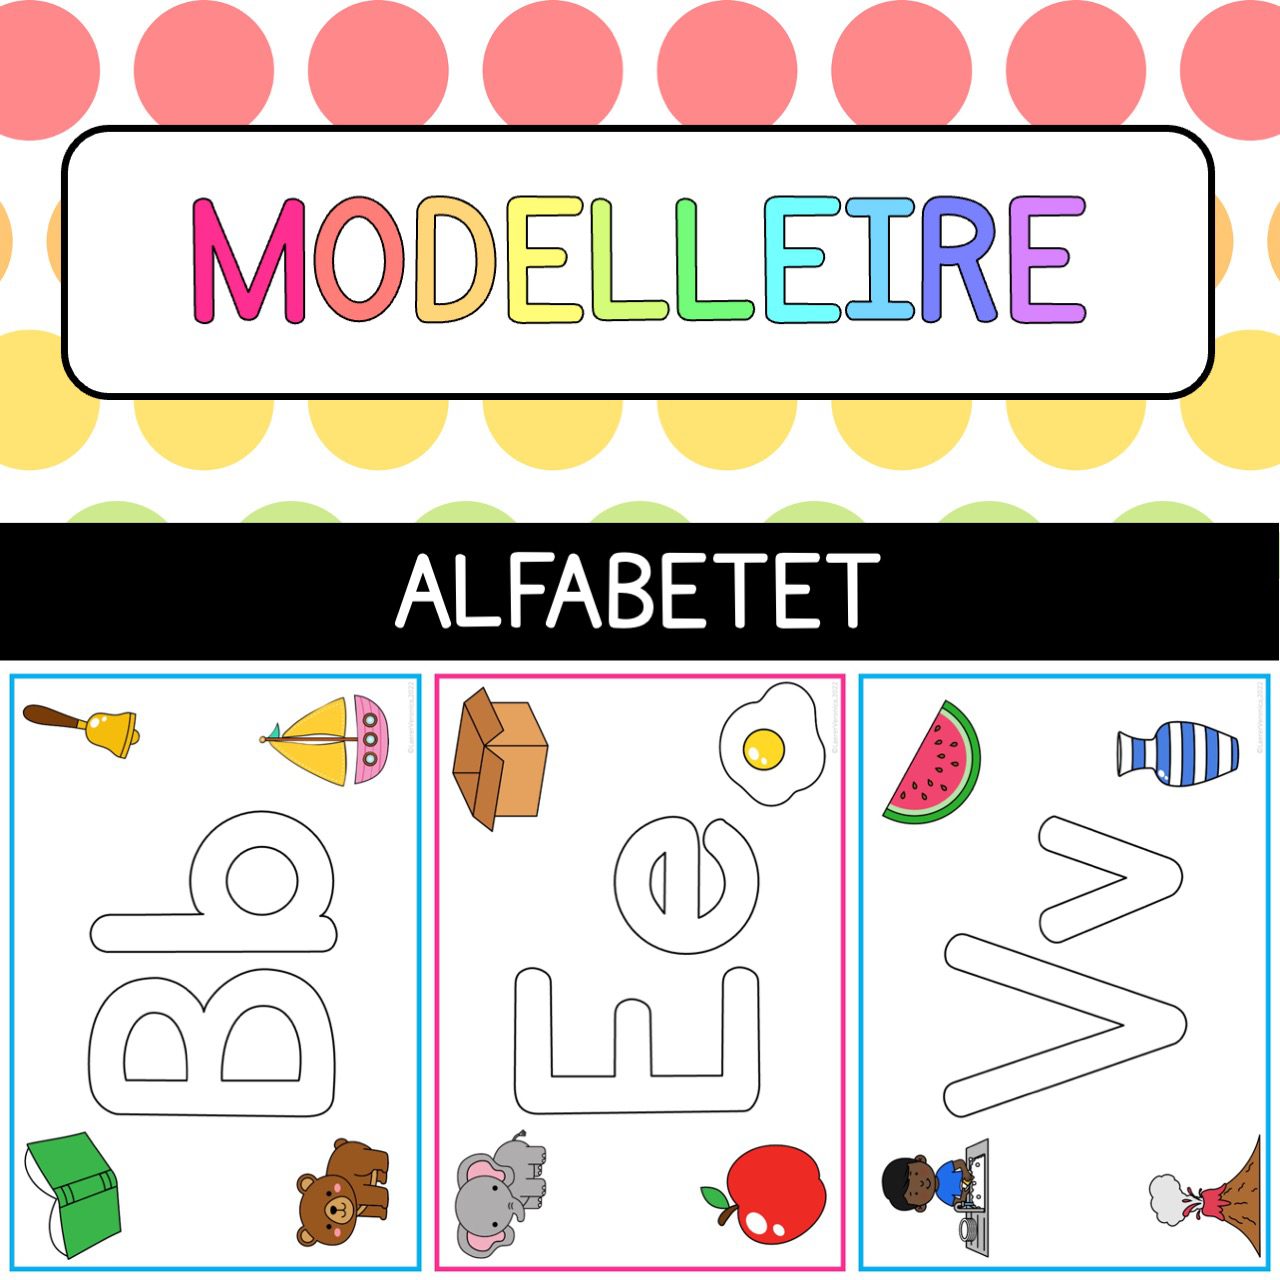 Modelleirematter – Alfabetet